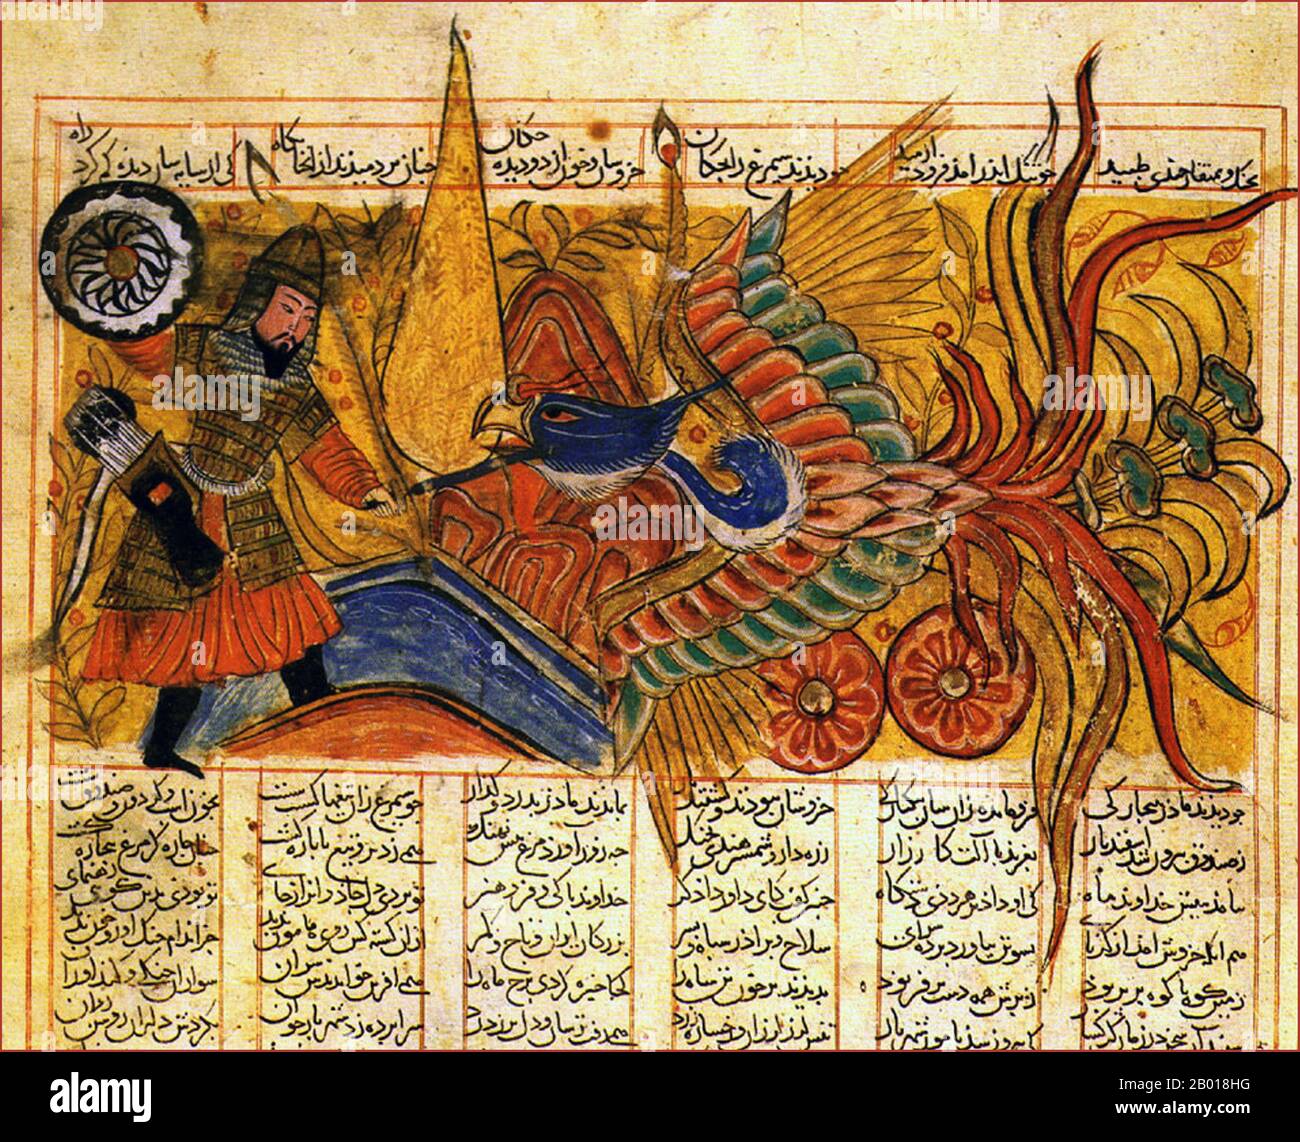 Iran: Isfandiyar, fils de Gushtasp (le roi de Kayanian de 5th), combat Simurgh, le Phoenix persan. Du Shah-nama ('Livre des Roiss') par Ferdowsi (940-1020). Shiraz, 1330. Le Shahnameh ou Shah-nama est un énorme opus poétique écrit par le poète perse Ferdowsi autour de 1000 ce et est l'épopée nationale de la sphère culturelle de la Grande Perse. Composé d'environ 60 000 versets, le Shahnameh raconte le passé mythique et historique du (grand) Iran depuis la création du monde jusqu'à la conquête islamique de la Perse au 7th siècle. Le travail est d'une importance centrale dans la culture persane. Banque D'Images